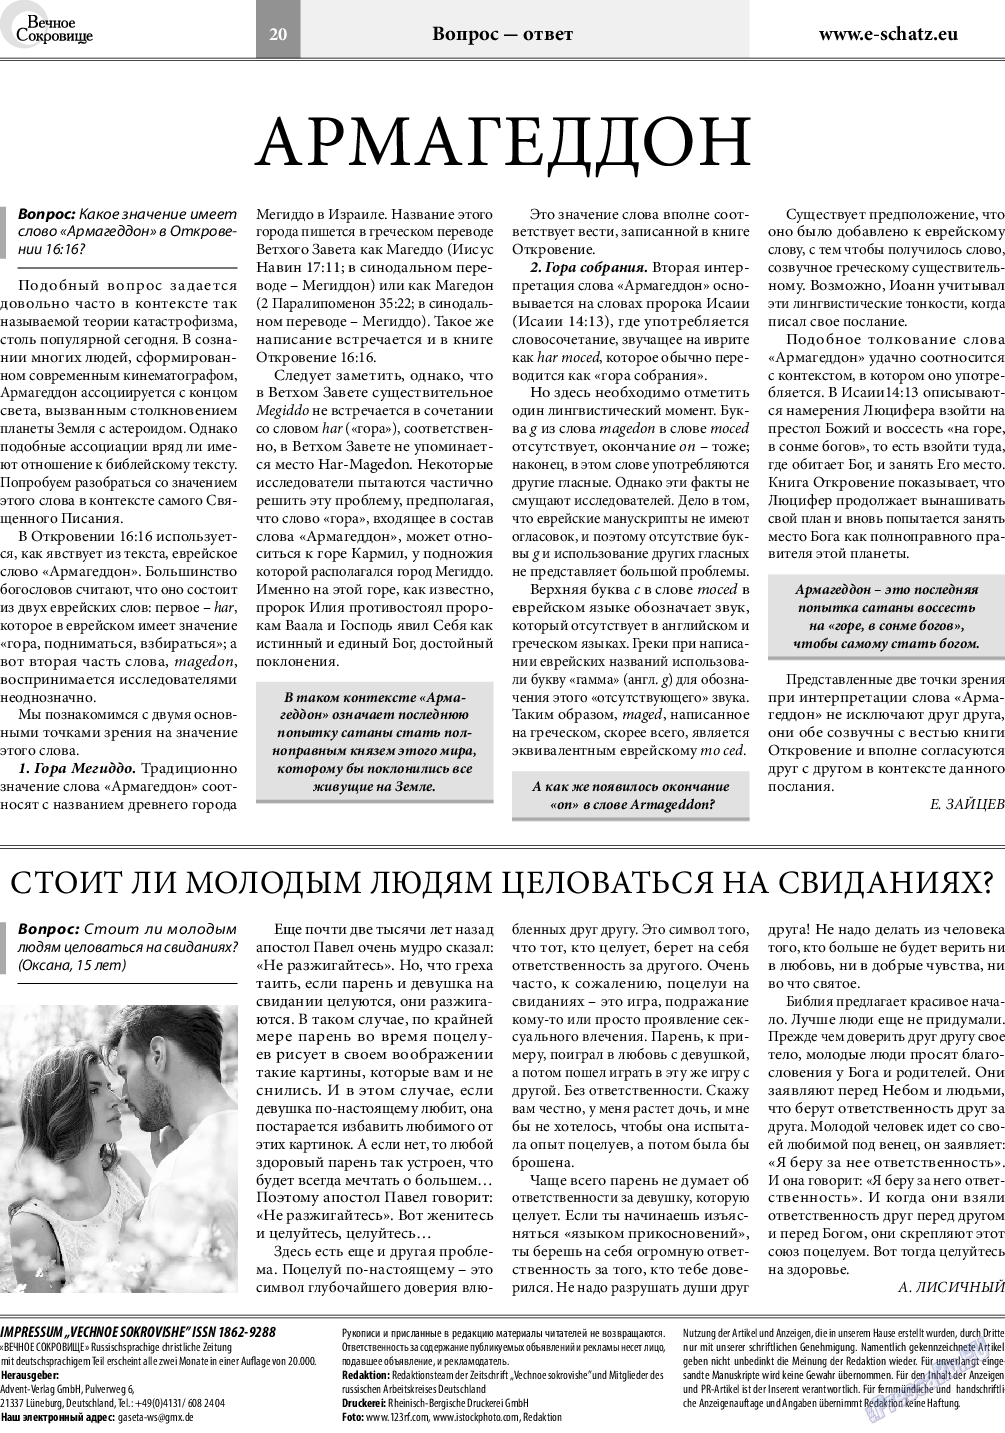 Вечное сокровище, газета. 2018 №4 стр.20